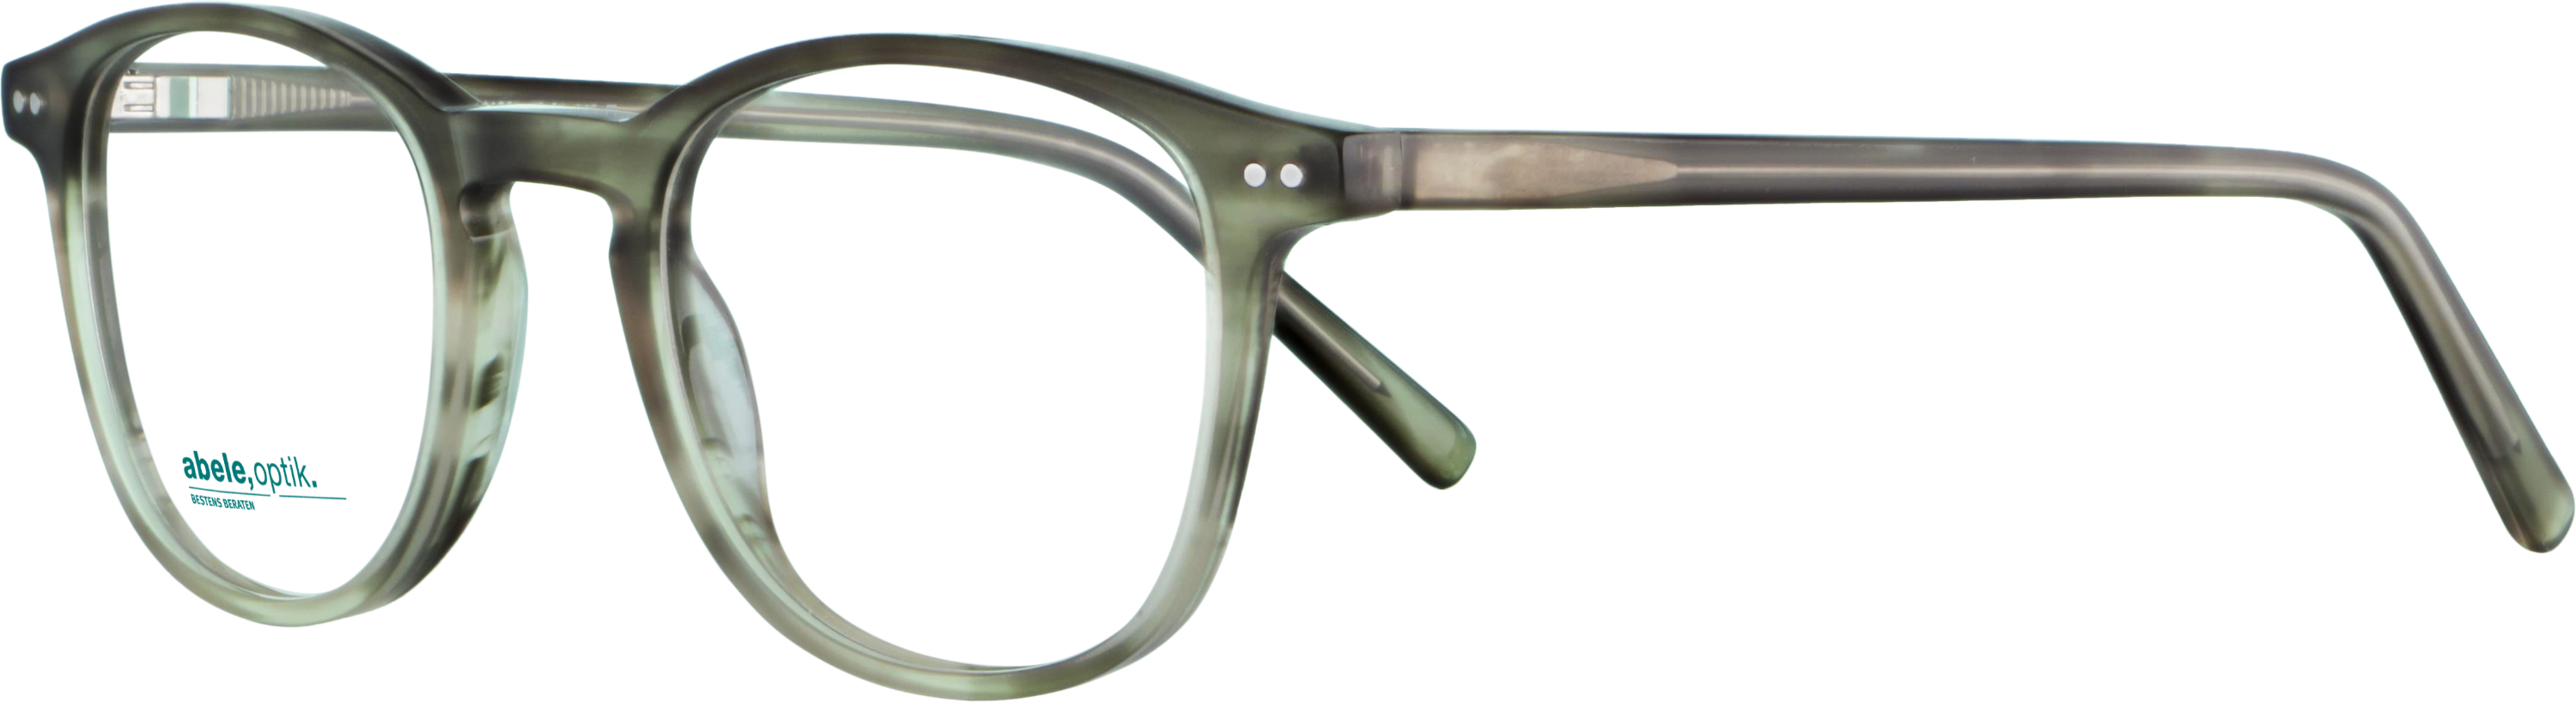 Das Bild zeigt die Korrektionsbrille 141801 von der Marke Abele Optik in grau.